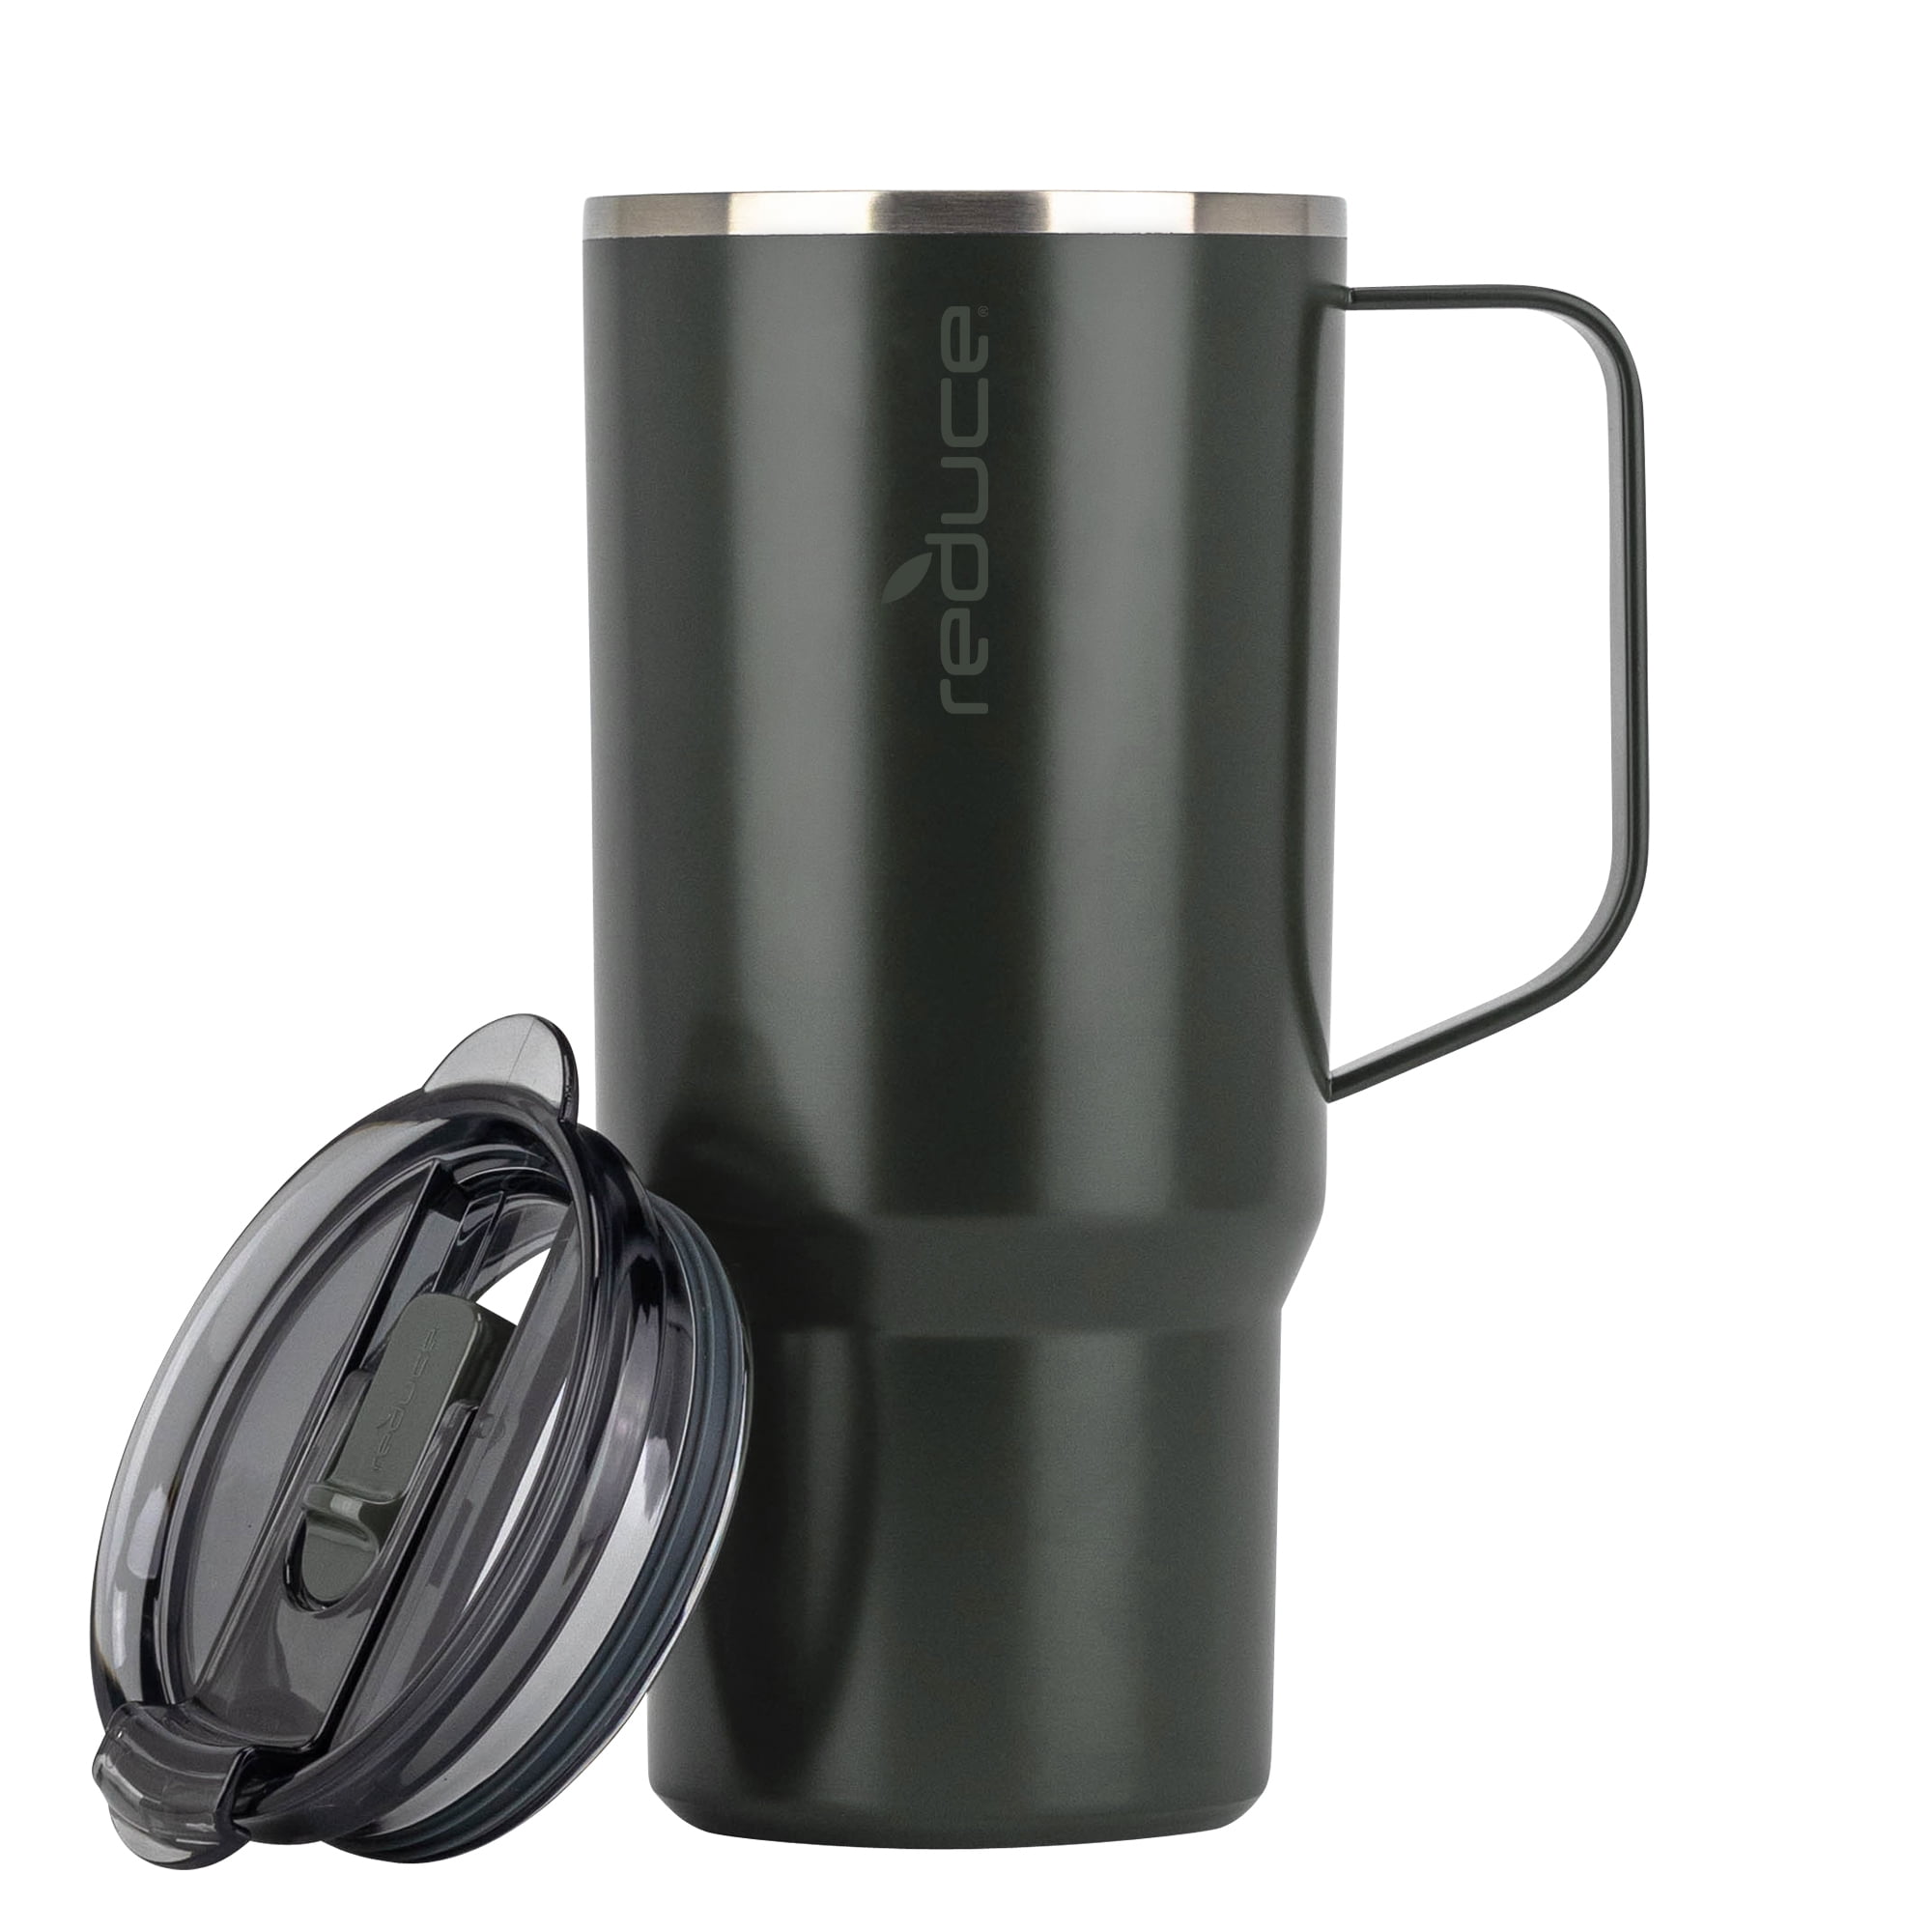 Reduce Hot-1 Mug 24oz Om 2 Pack (Linen)